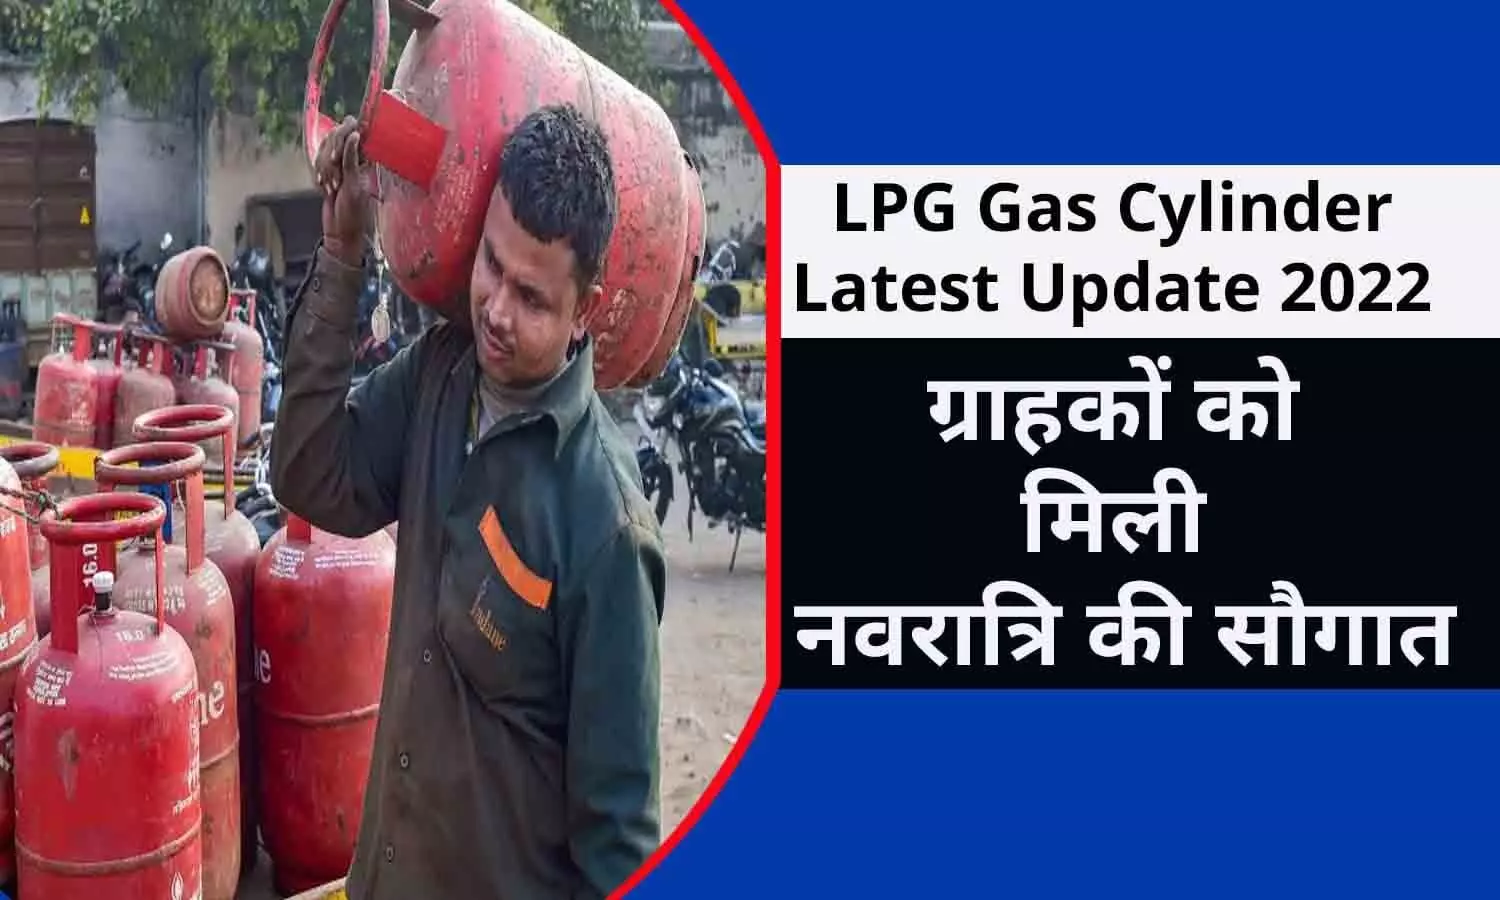 LPG Gas Cylinder Latest Update October 2022: खुशखबरी! एलपीजी गैस सिलेंडर को लेकर अभी-अभी आया ताजा अपडेट, ग्राहकों को मिली नवरात्रि की सौगात, फटाफट जाने